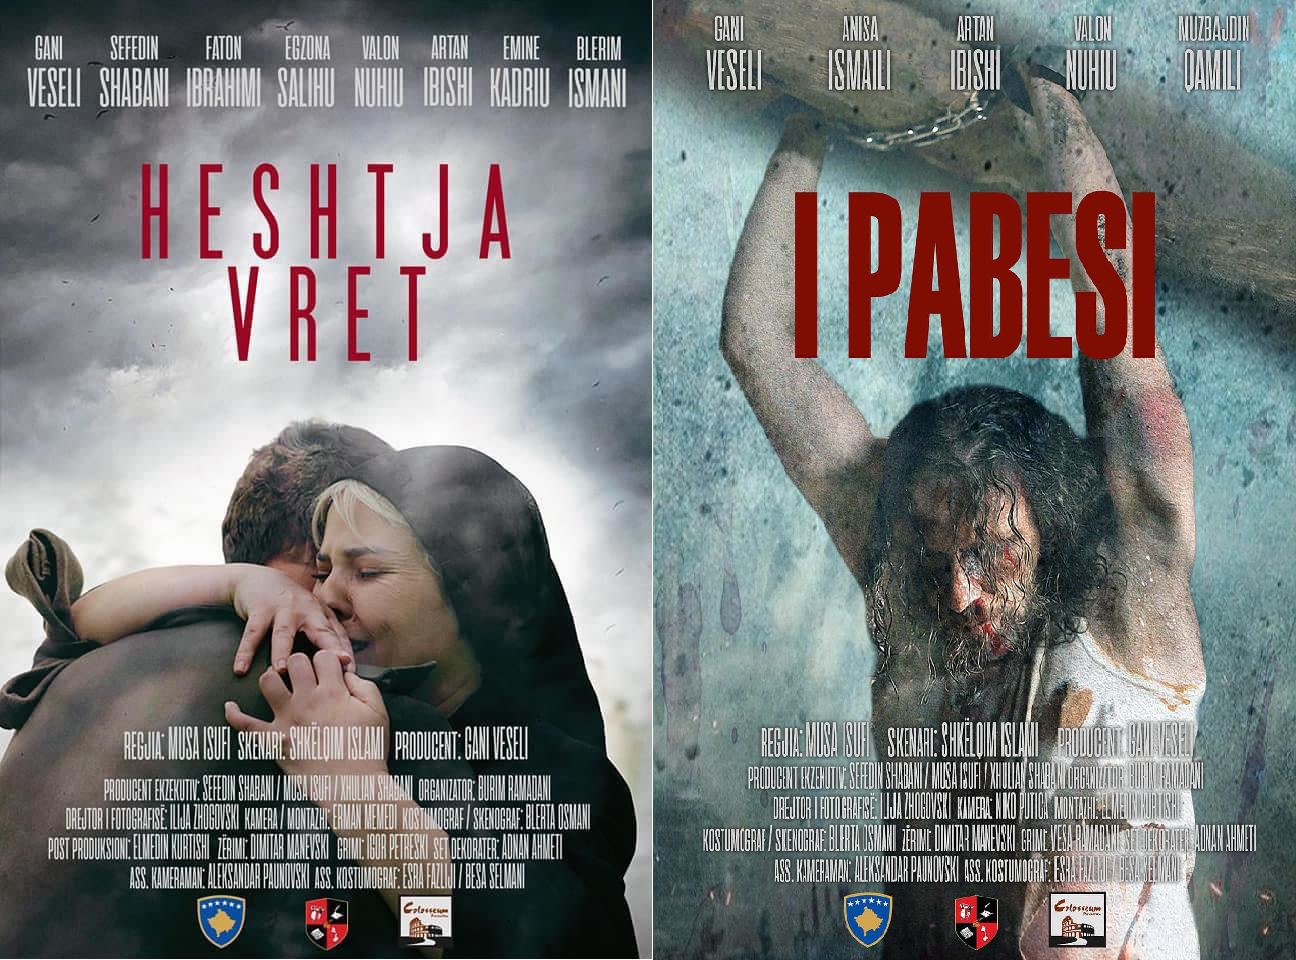 Filmi "Heshtja vret" dhe "I pabesi" me producent Gani Veseli. Foto nga Gani Veseli (Facebook)